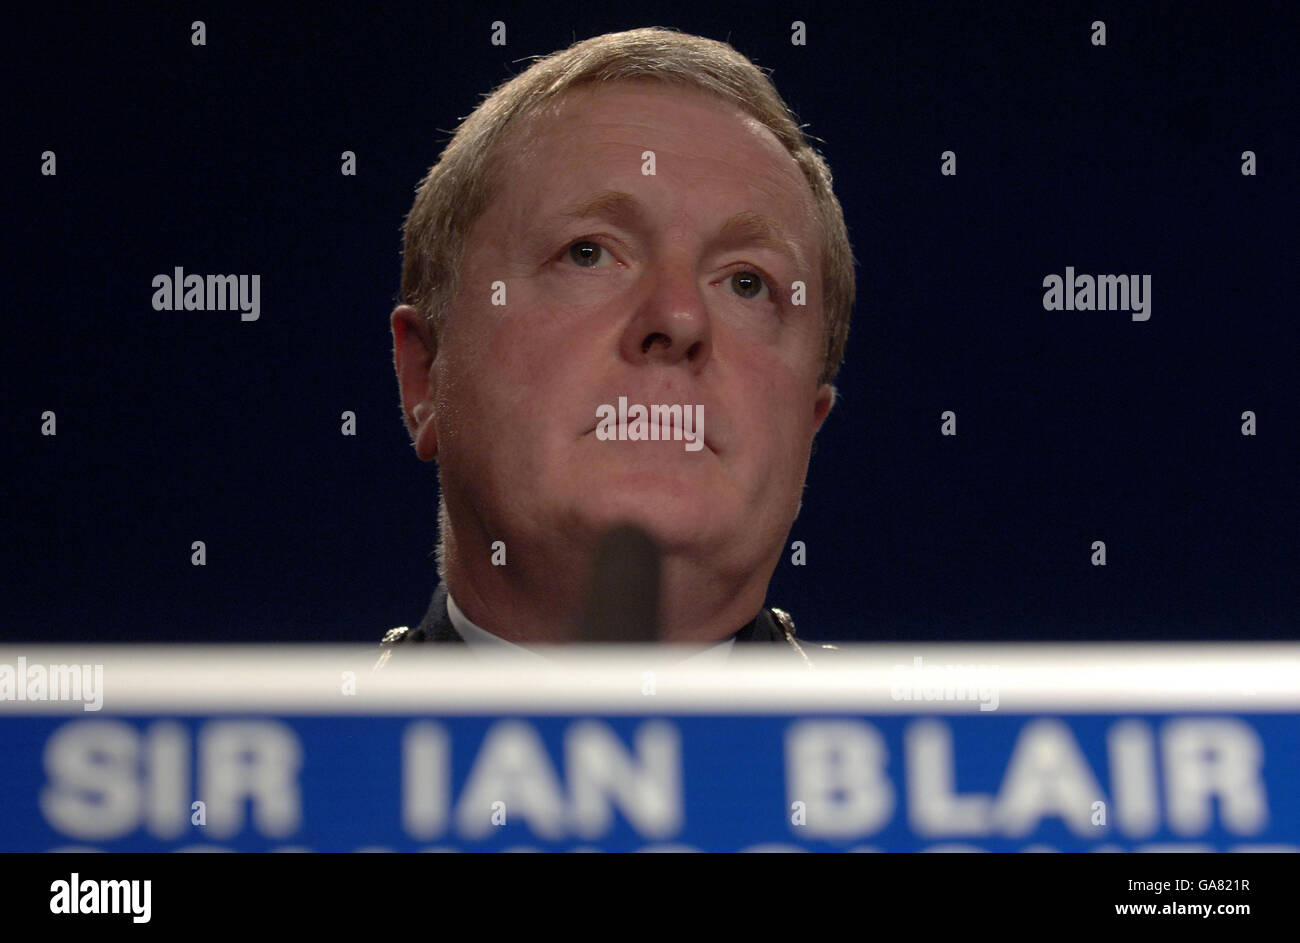 Der Metropolitan Police Commissioner, Sir Ian Blair, gibt während einer Pressekonferenz in Scotland Yard, London, eine Erklärung über den IPCC-Bericht über die Tötung von Jean Charles de Menezes an der Stockwell U-Bahnstation im Jahr 2005 ab. Stockfoto